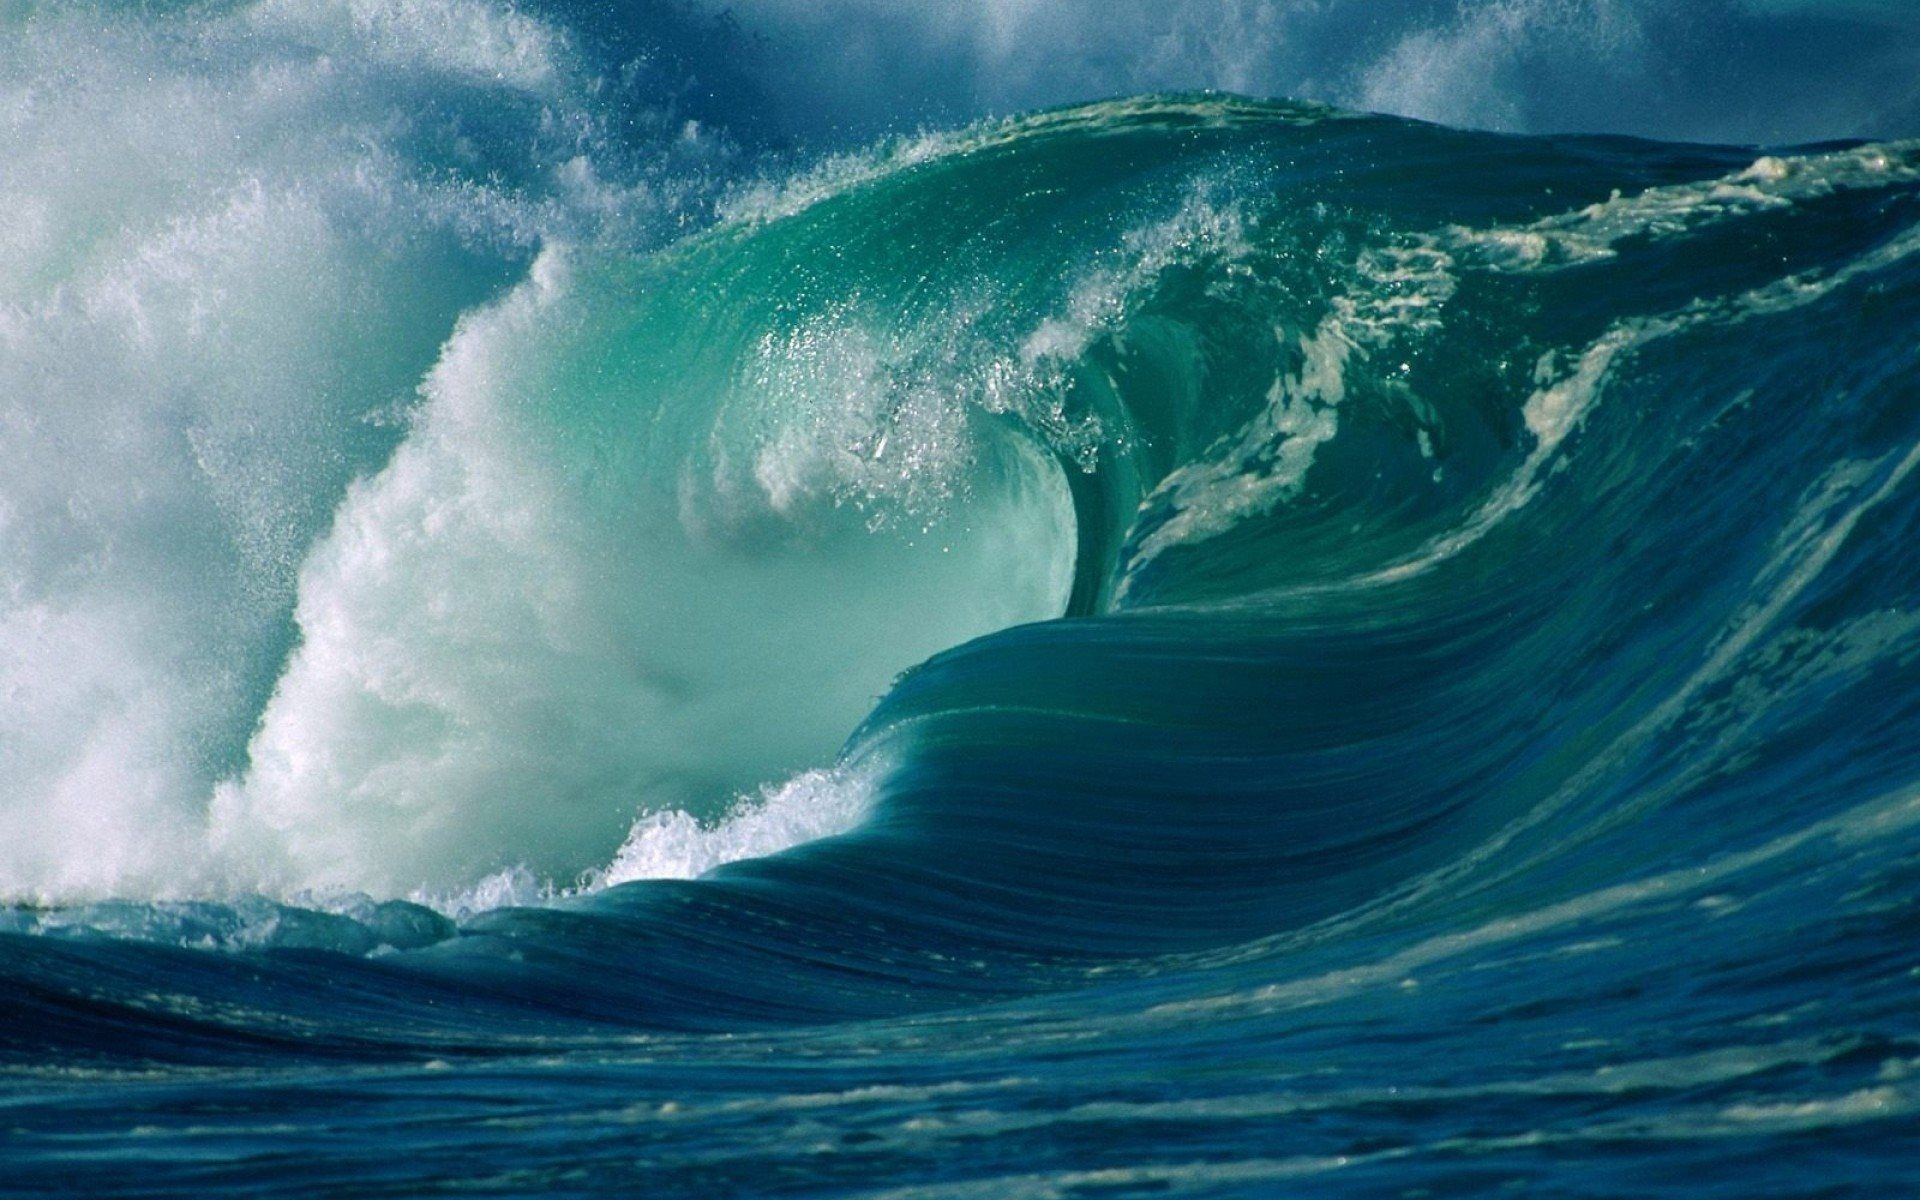 والپیپر جابه جایی امواج دریا و اقیانوس در اثر زلزله های زیردریایی به شکل پدیده ترسناک سونامی